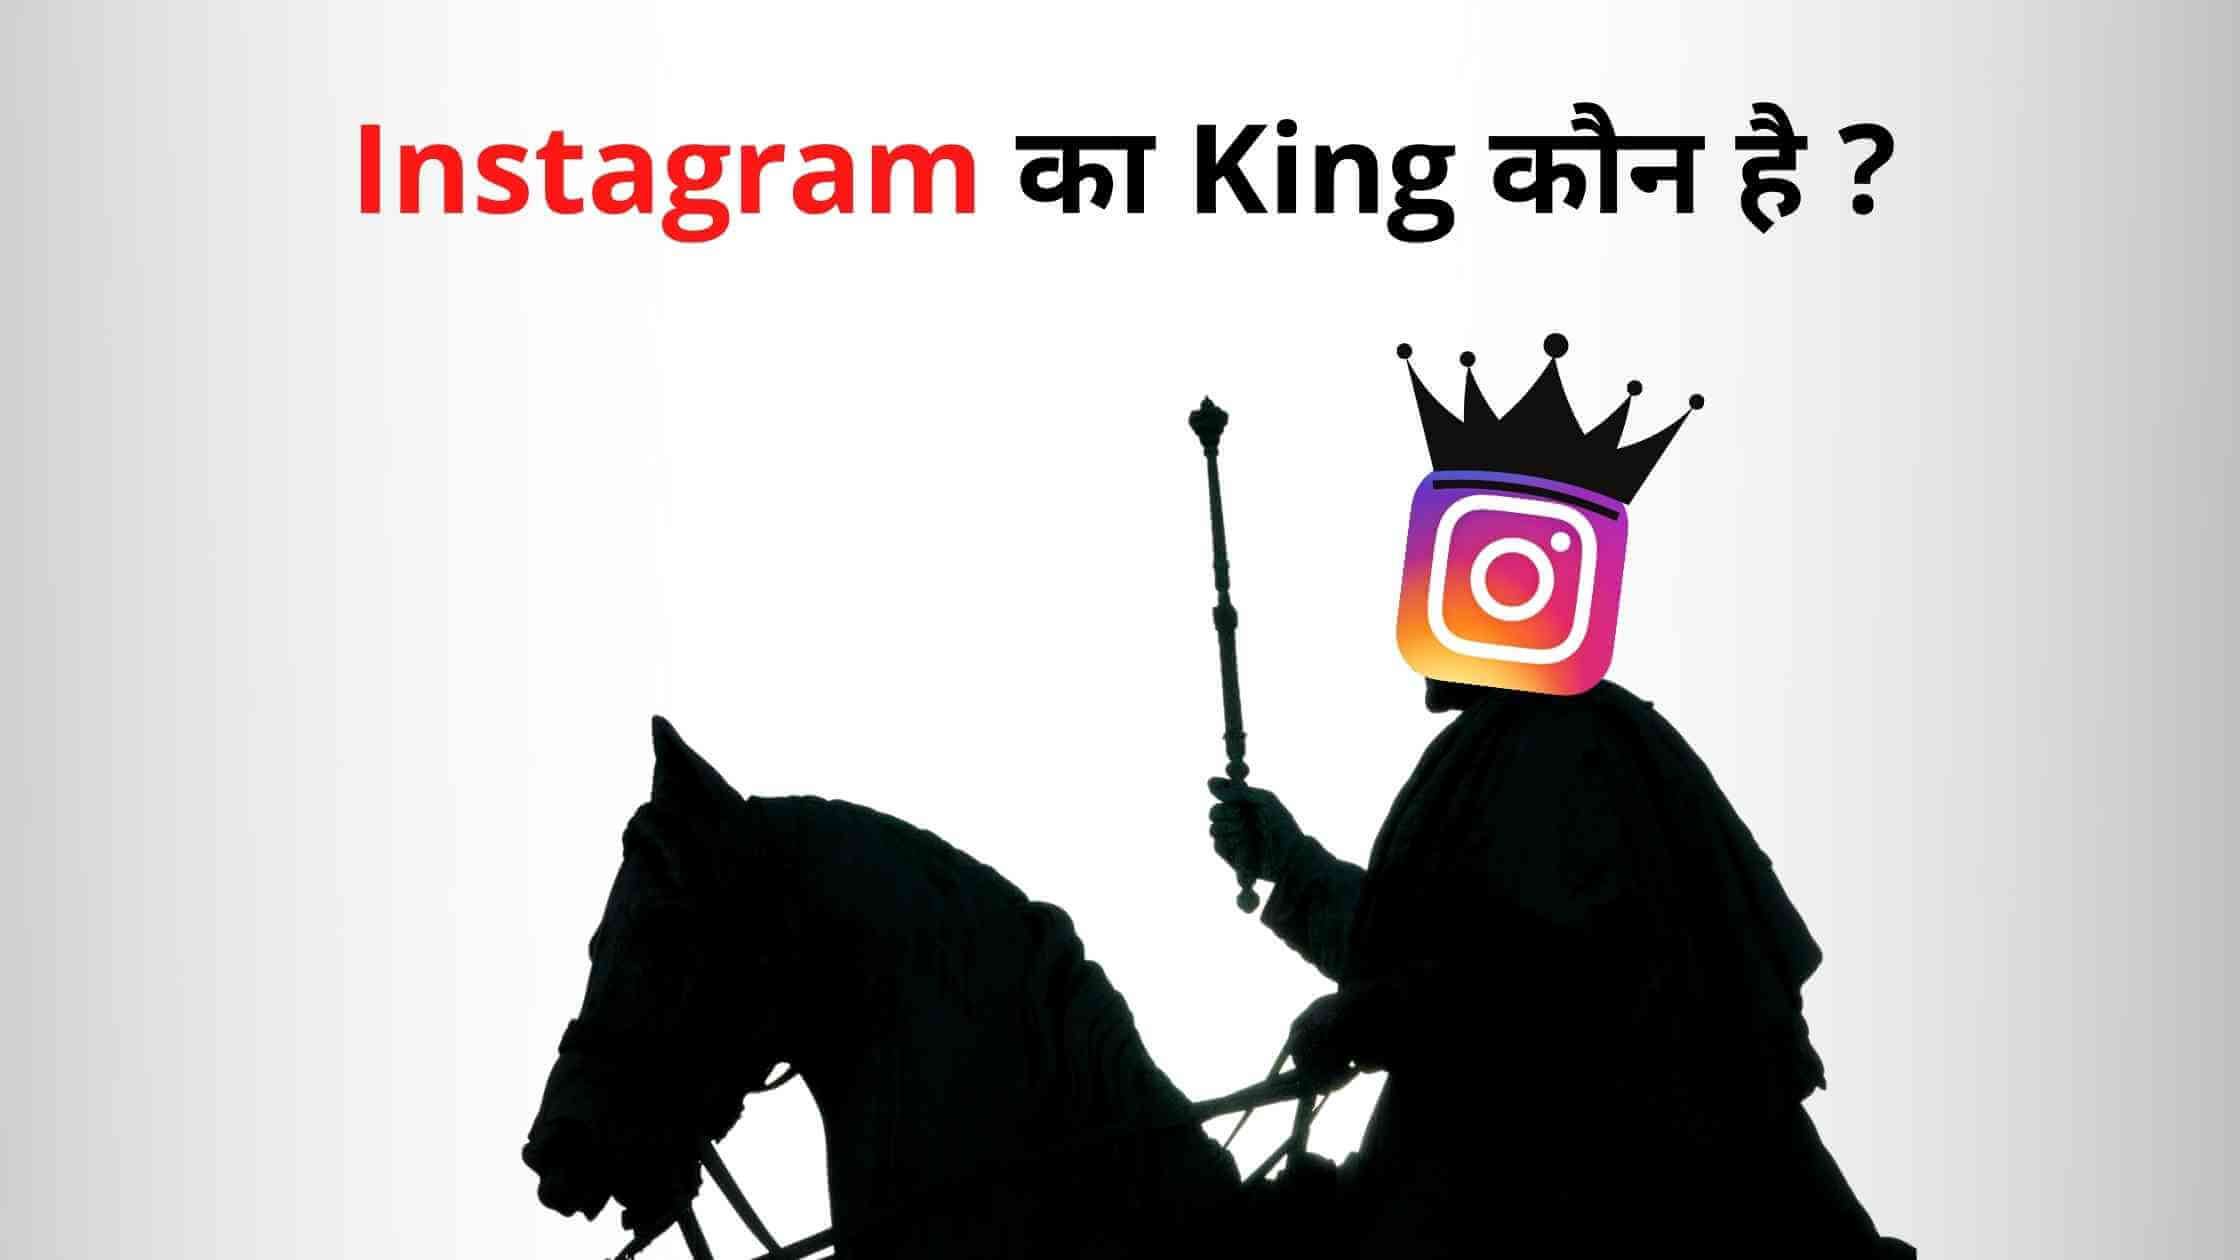 instagram ka king kaun hai